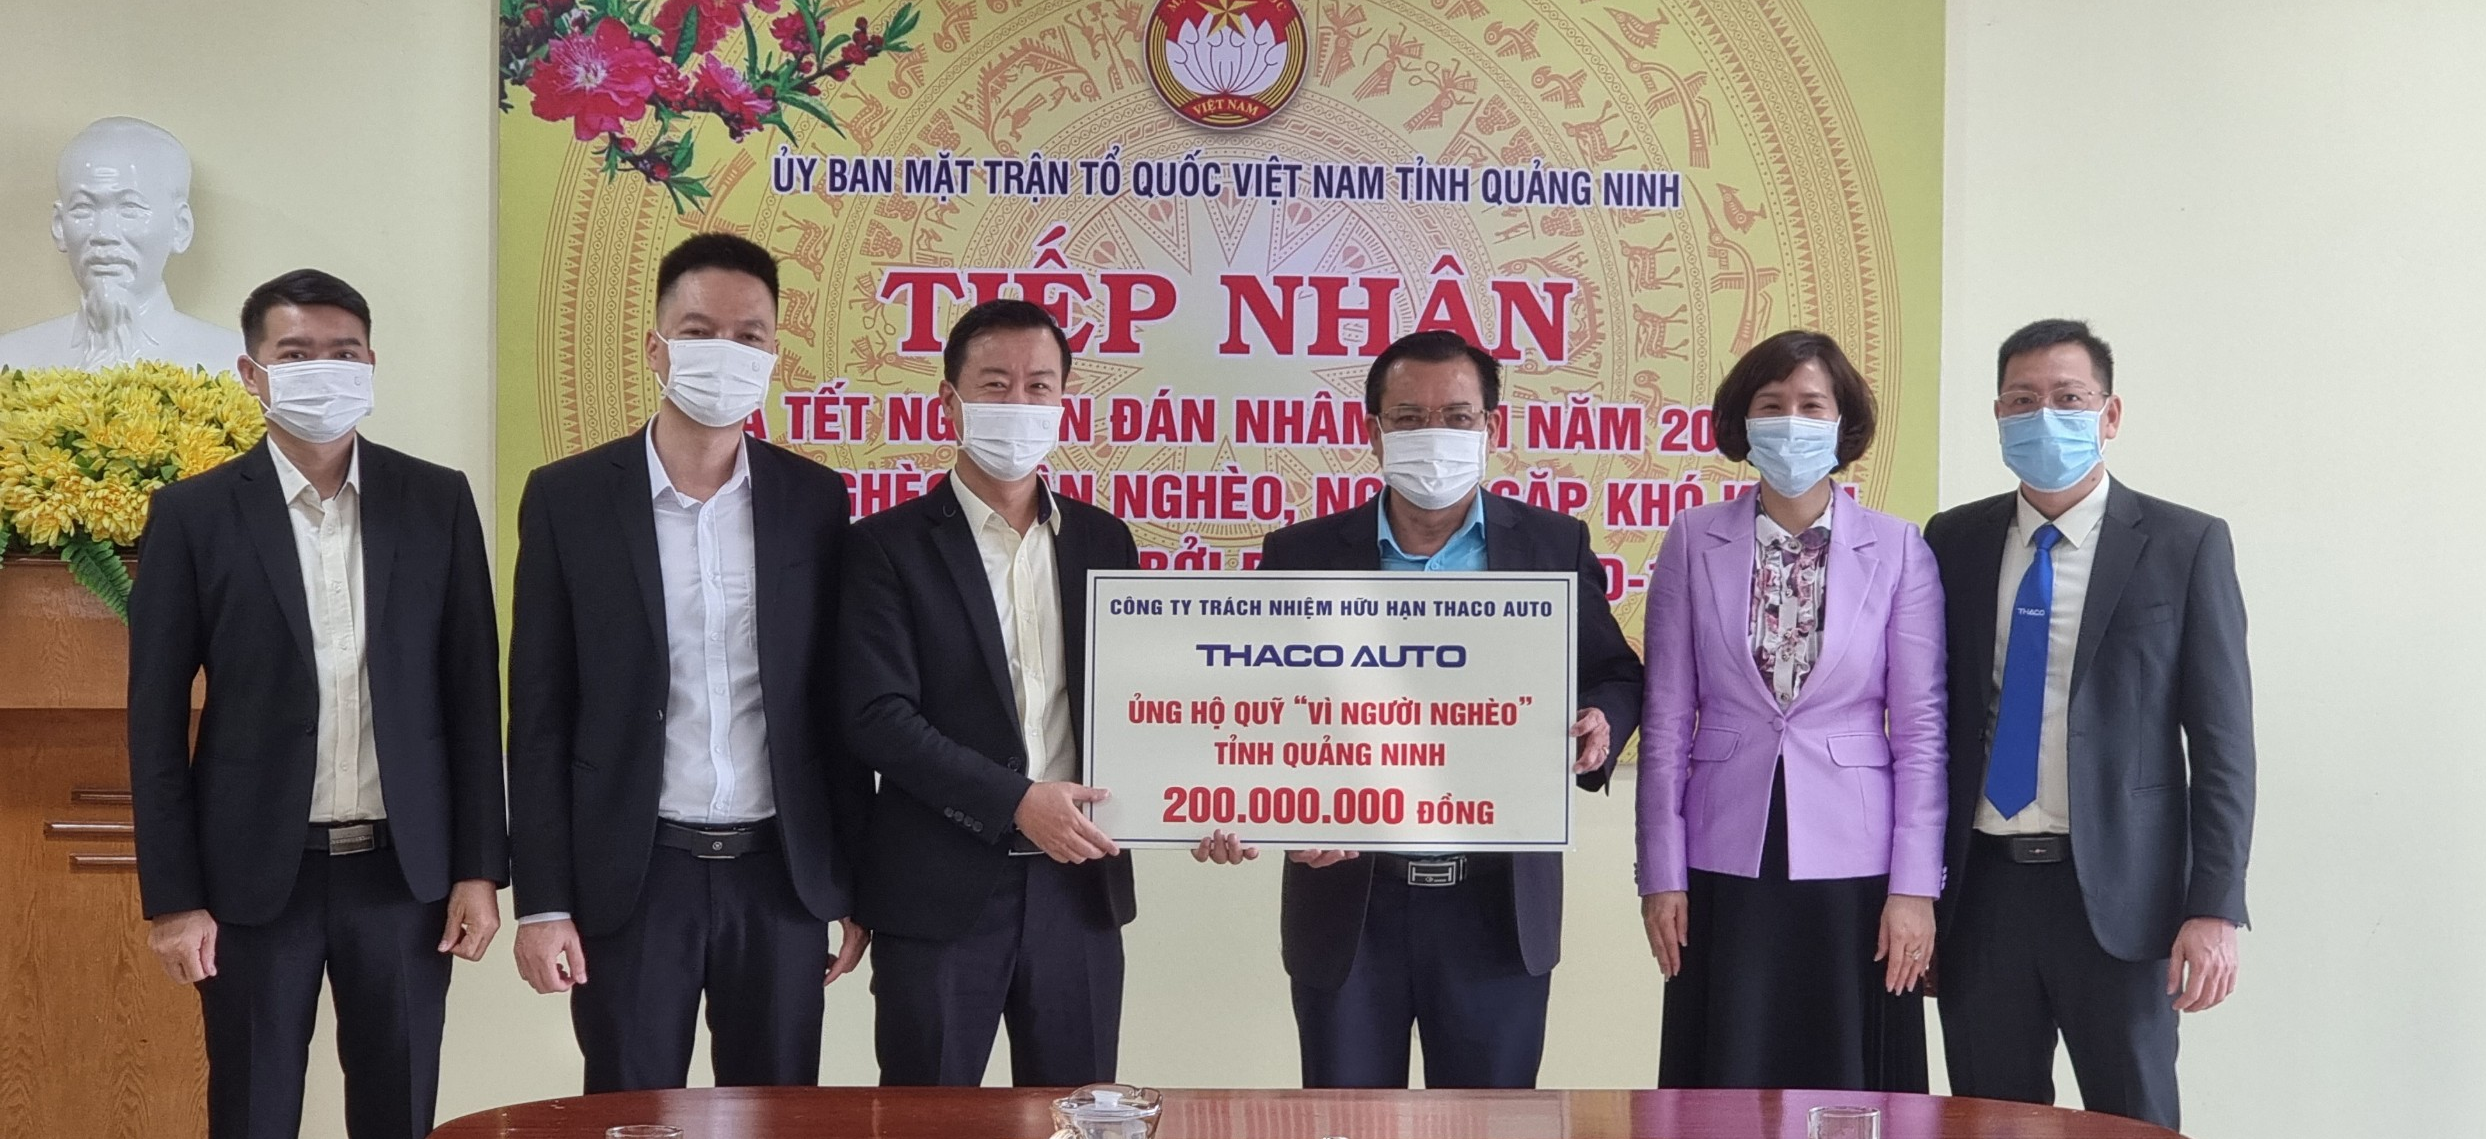 Ủy ban MTTQ Việt Nam tỉnh Quảng Ninh tiếp nhận 200 triệu đồng từ Công ty Cổ phần Ô tô Trường Hải ủng hộ Quỹ ''Vì người nghèo''.